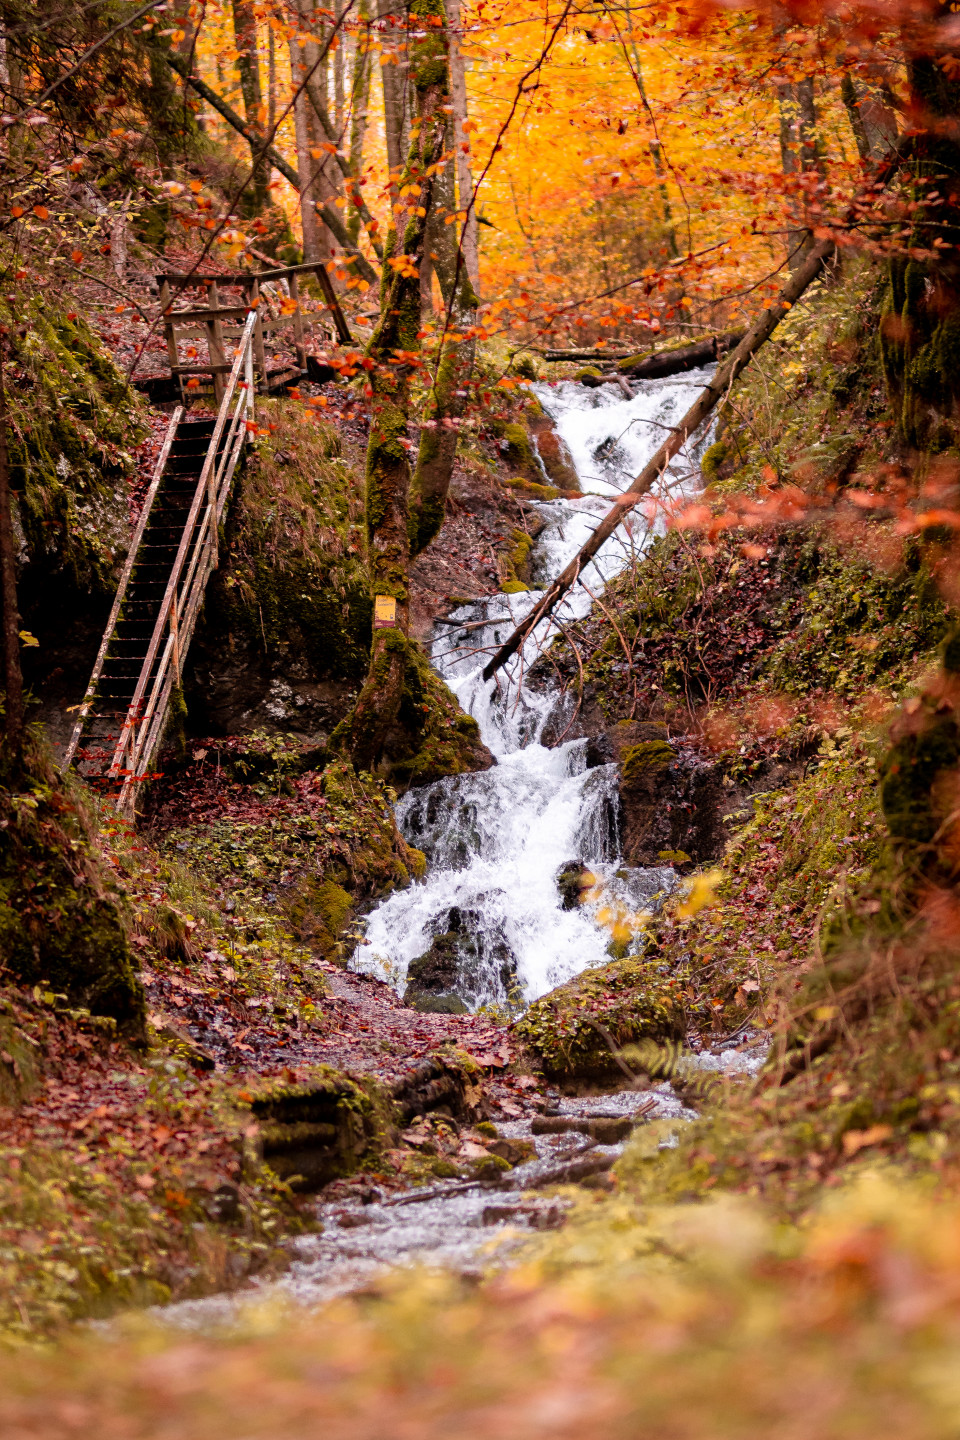 Herbstliches Bild vom großen Wasserfall in Hohenberg.